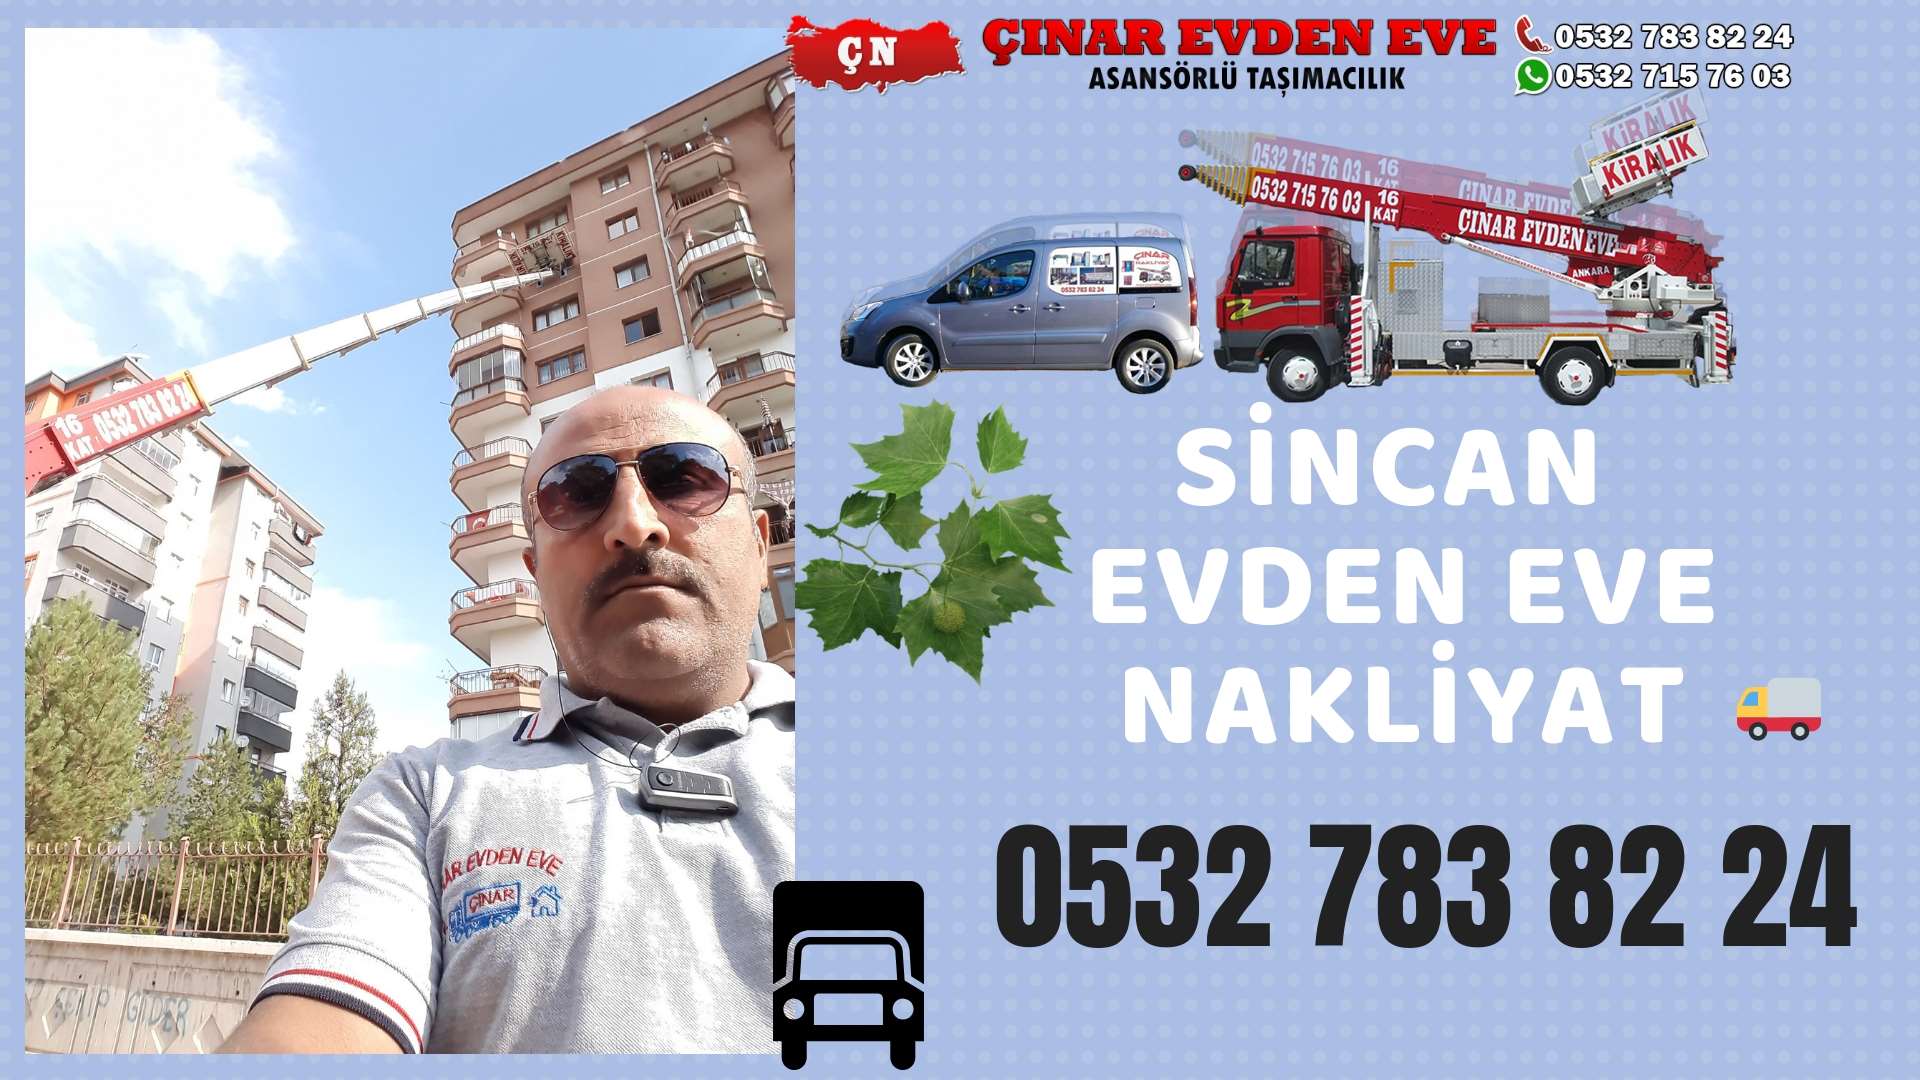 Ankara Altındağ Evden Eve Nakliyat, Asansörlü Taşımacılık, Ofis / İş Yeri Taşıma 0532 715 76 03